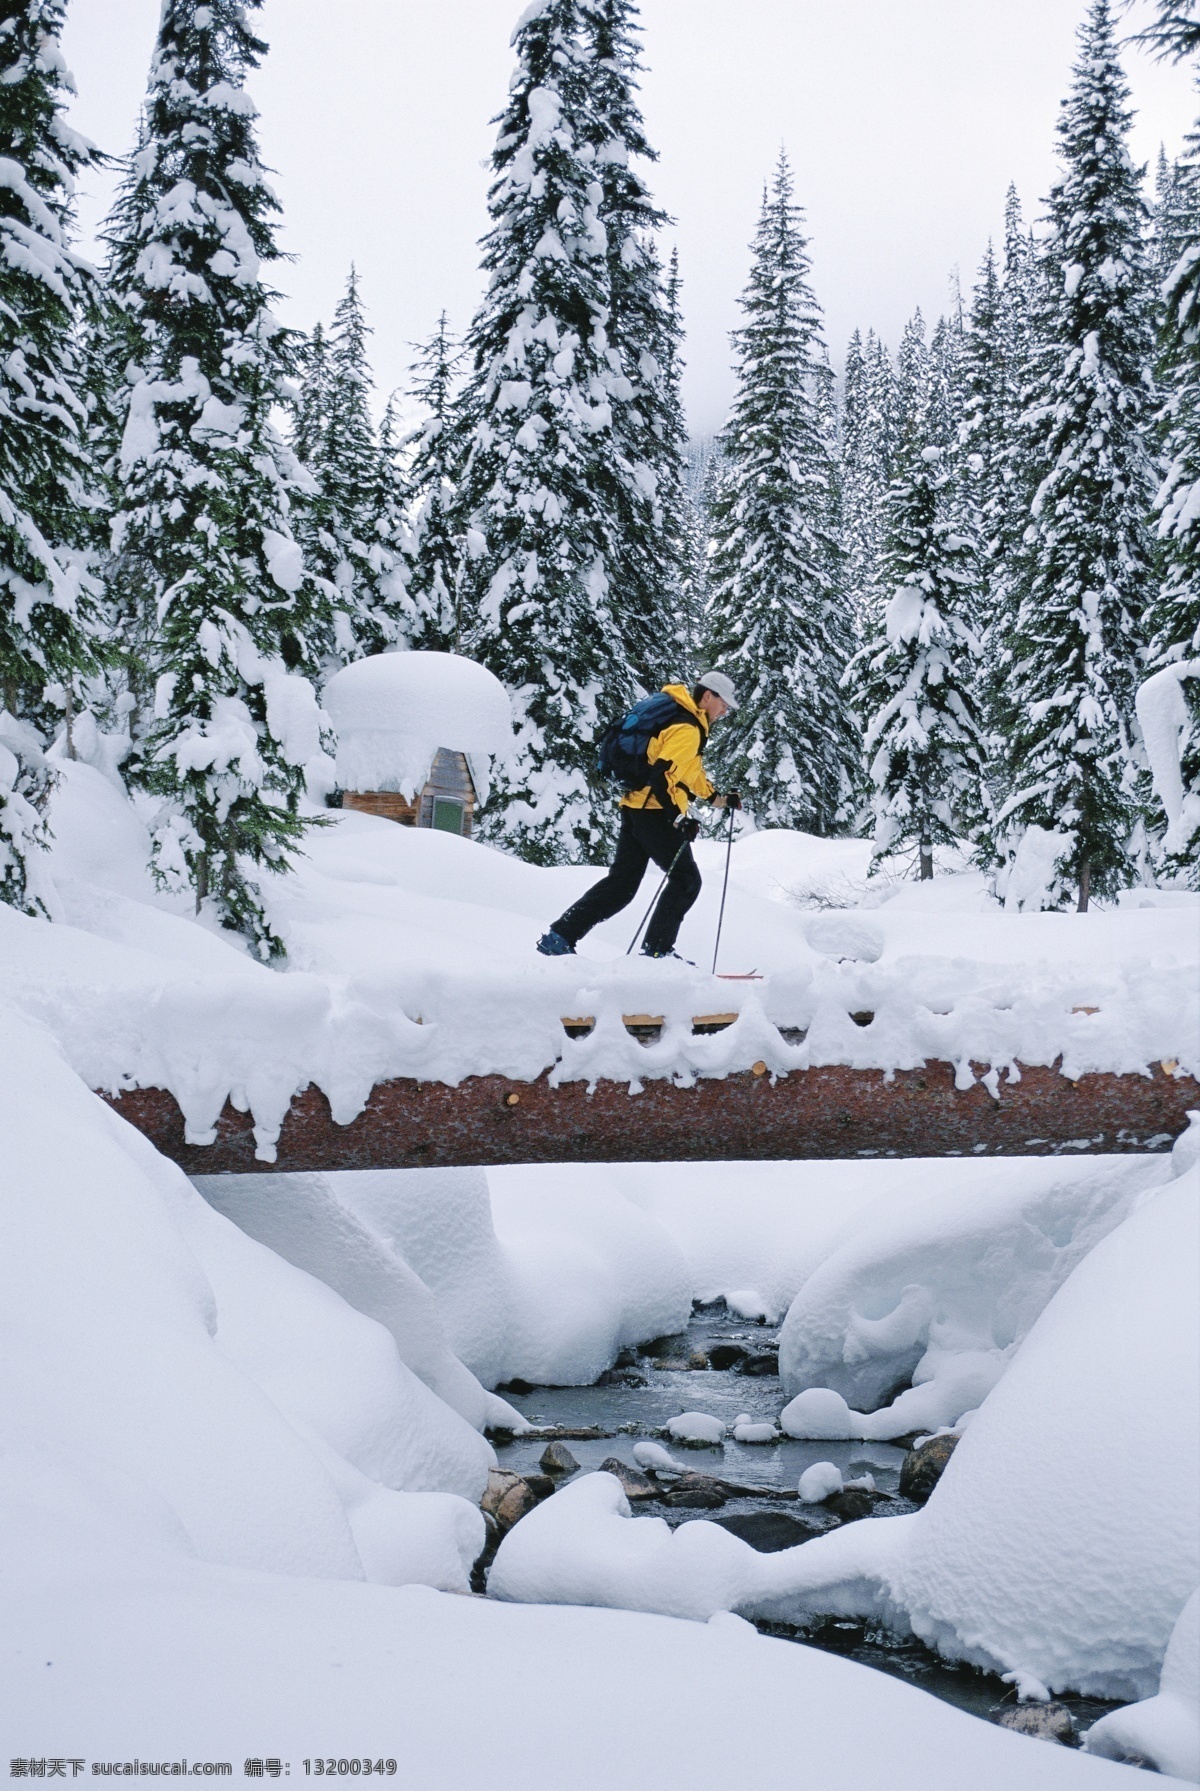 雪地 上 滑雪 运动员 高清 雪地运动 划雪运动 极限运动 体育项目 运动图片 生活百科 雪山 风景 摄影图片 高清图片 体育运动 白色